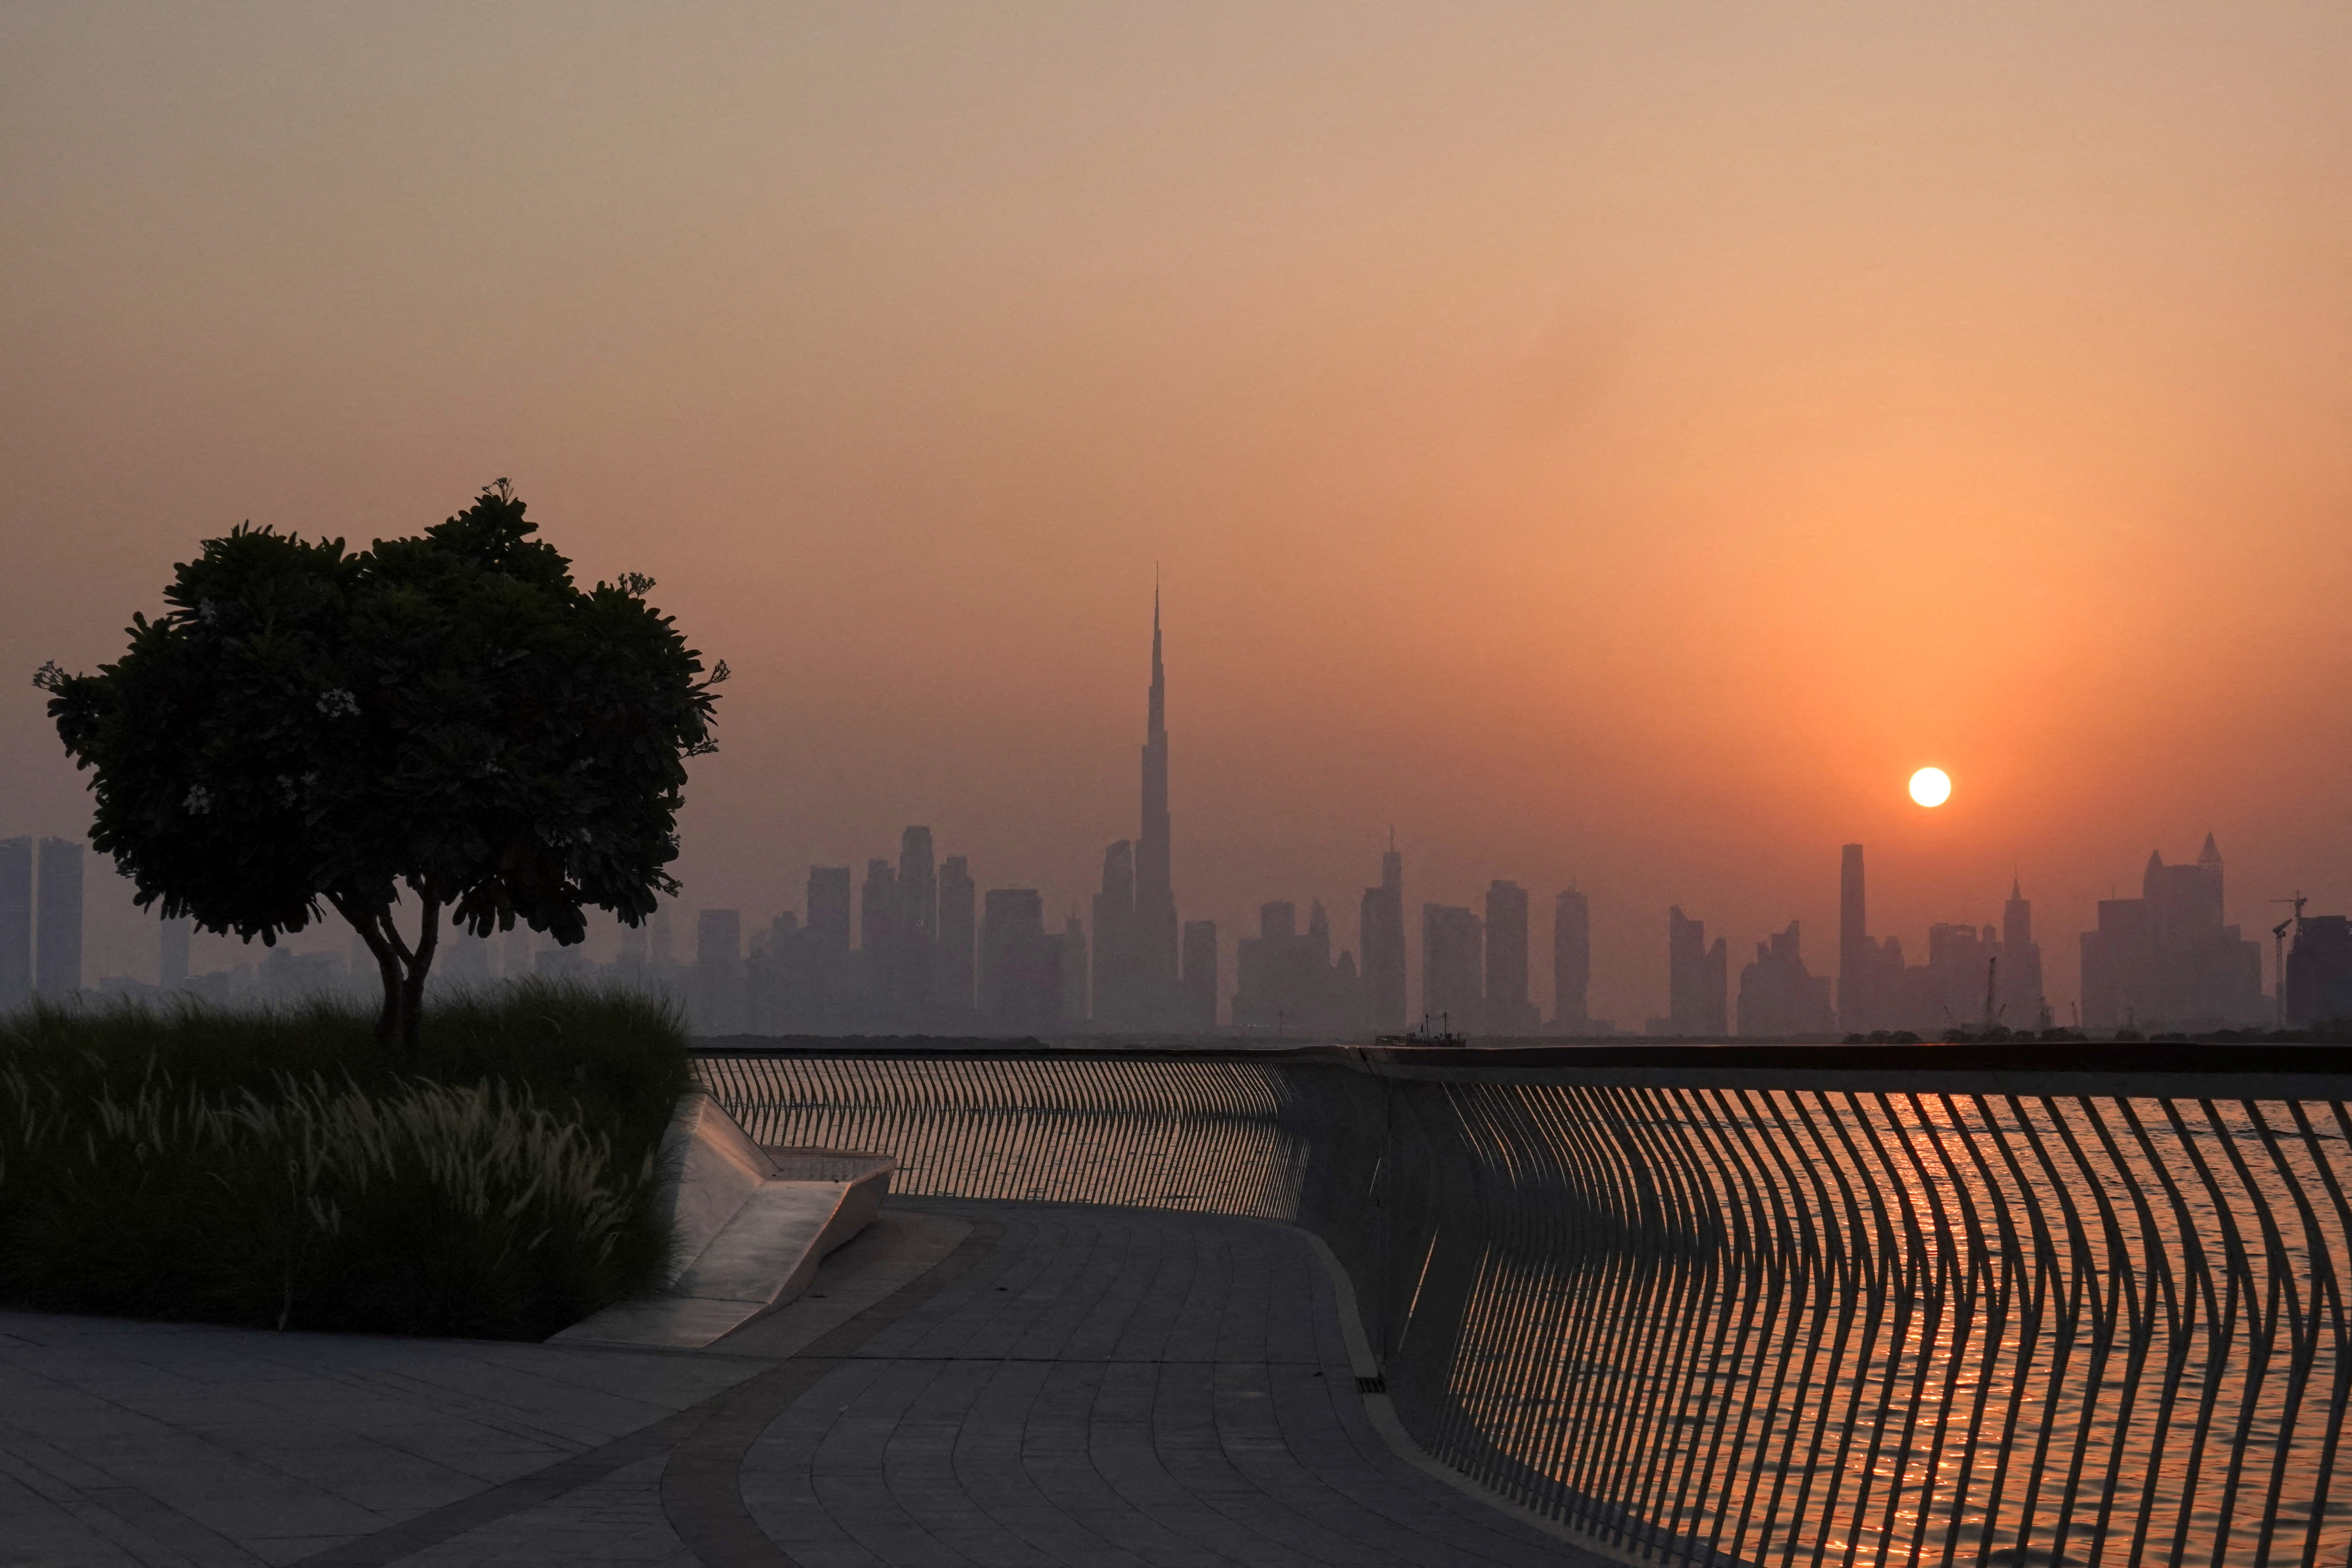 The Burj Khalifa building peaks through the skyline as the sun sets over Dubai